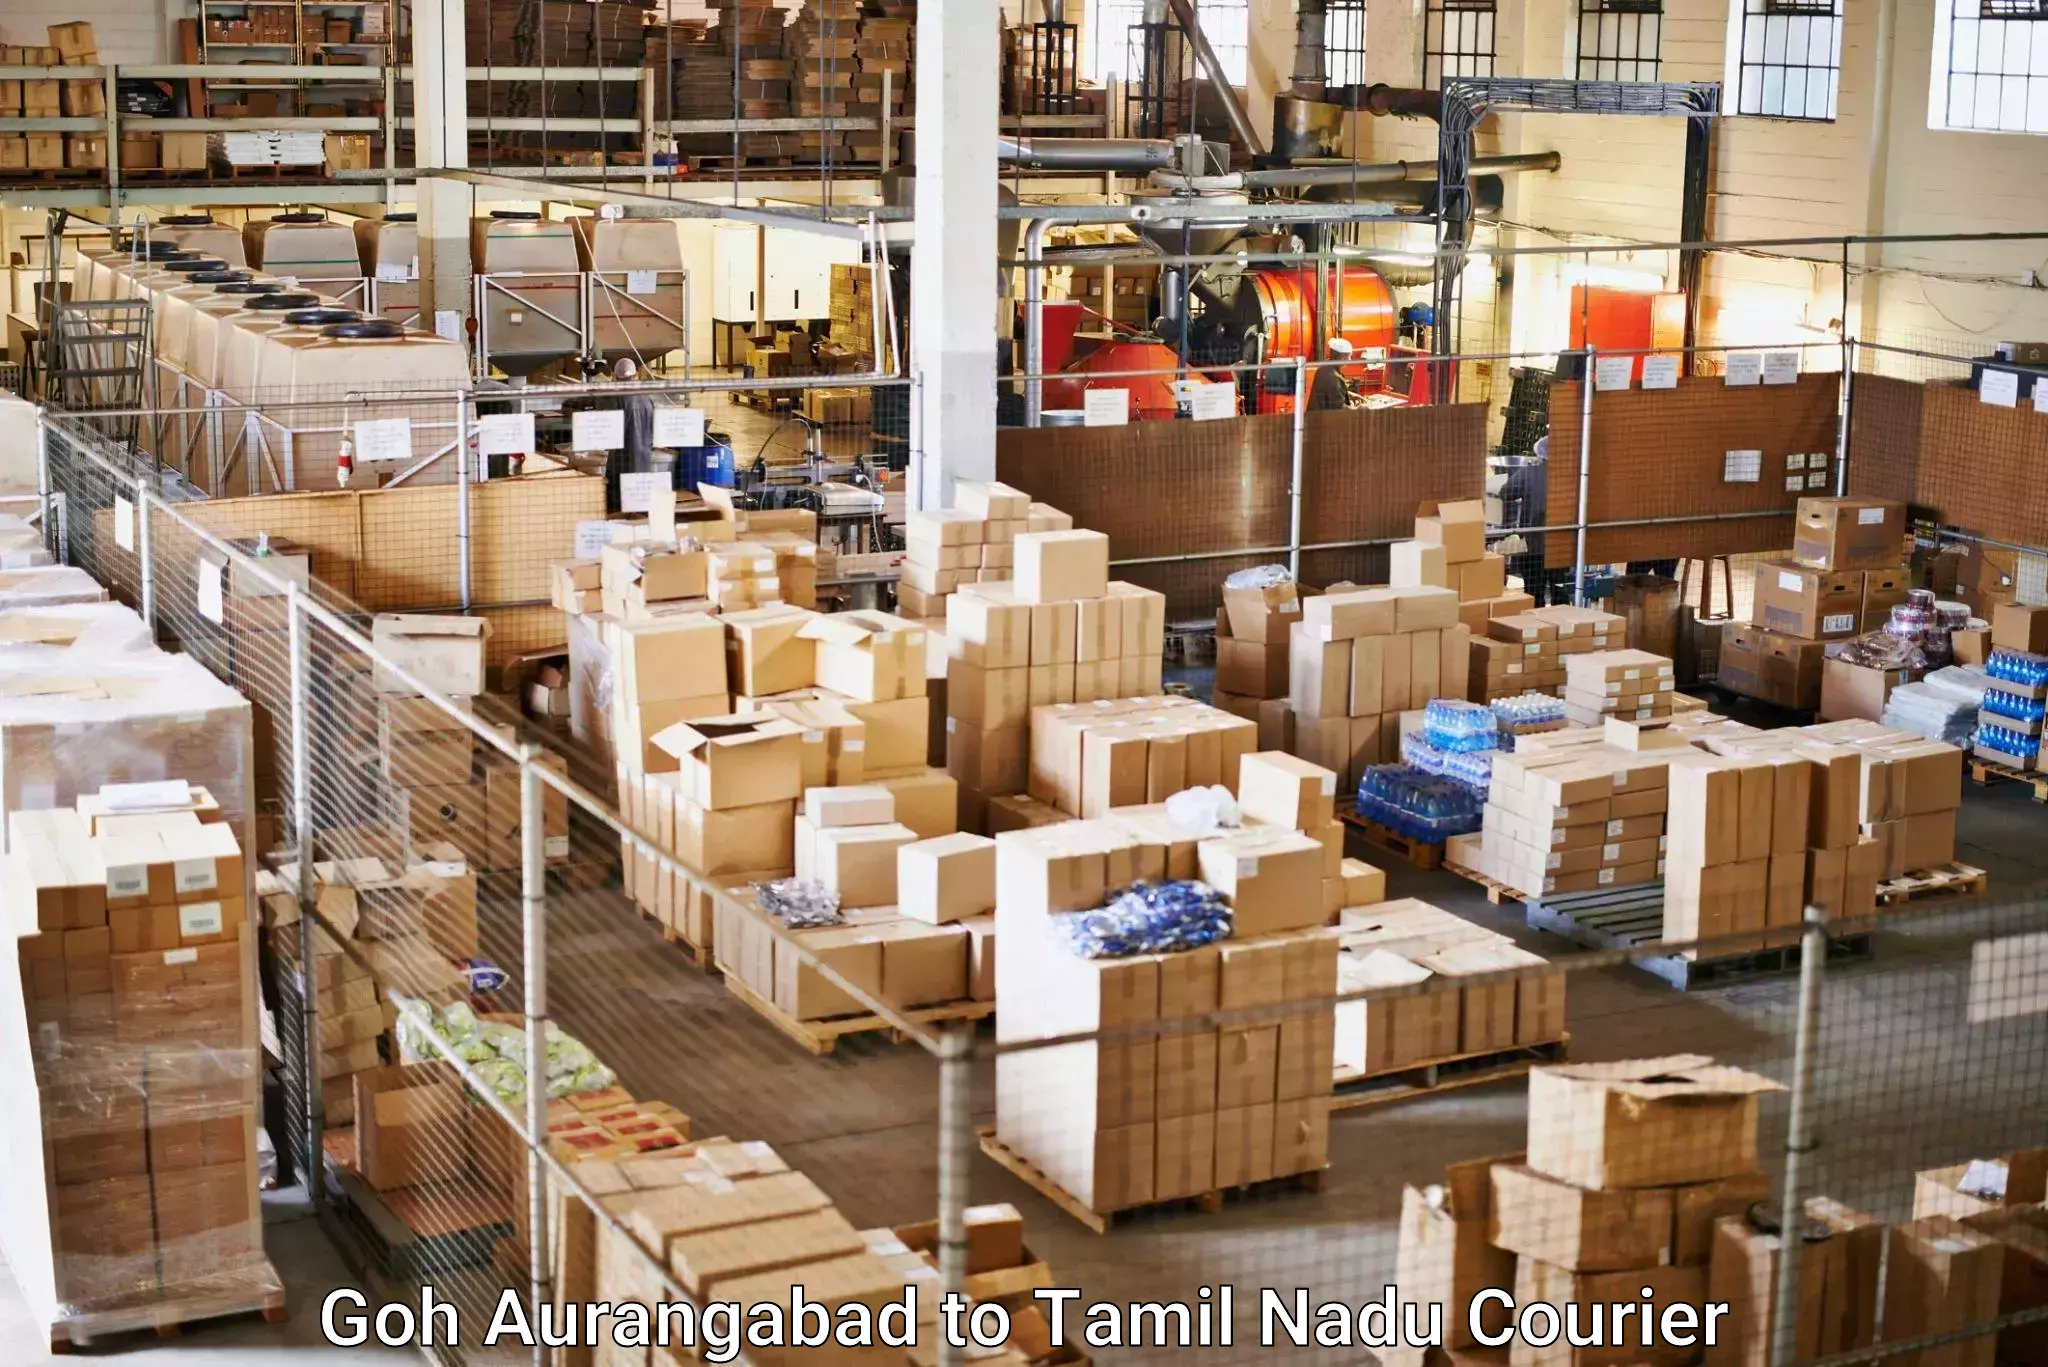 Express delivery network Goh Aurangabad to Tamil Nadu